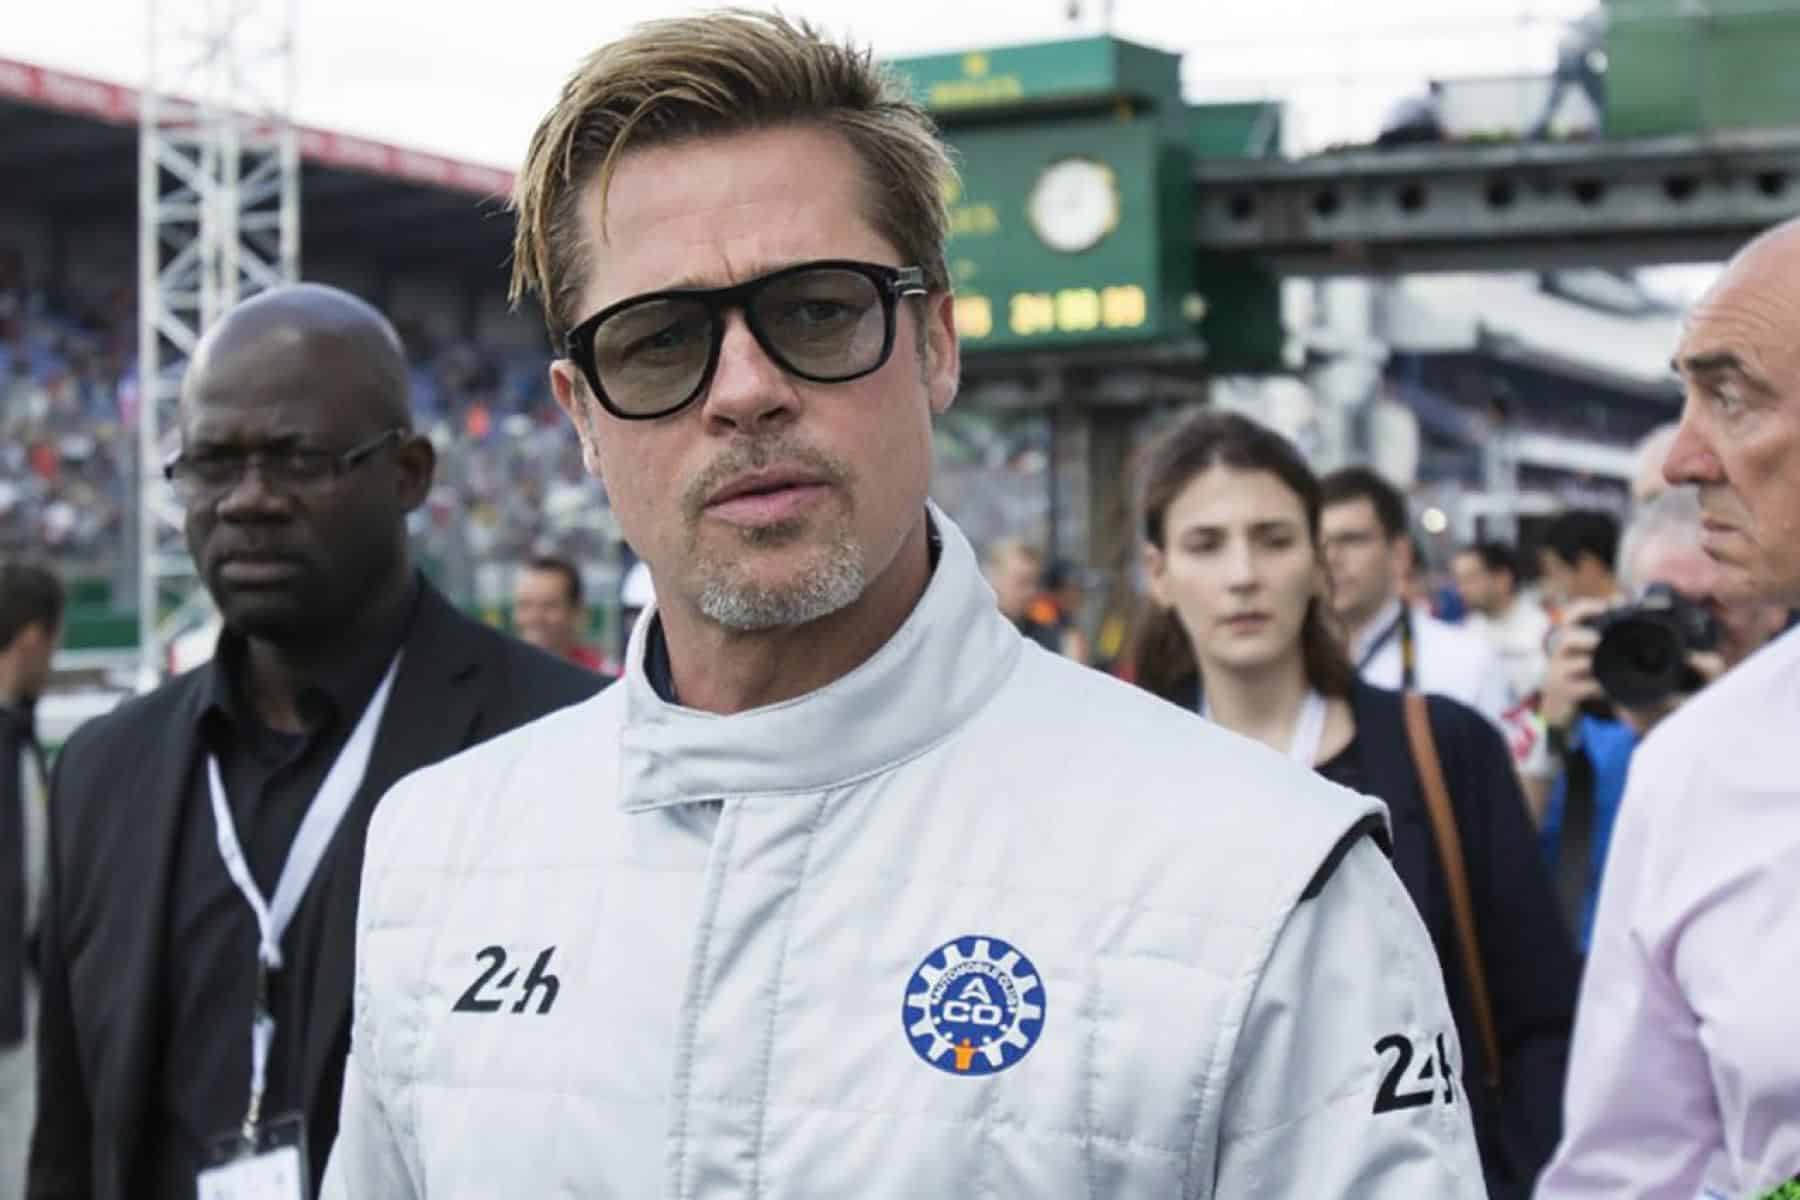 - Película Brad Pitt F1: Todo lo que sabemos hasta ahora (ACTUALIZADO)